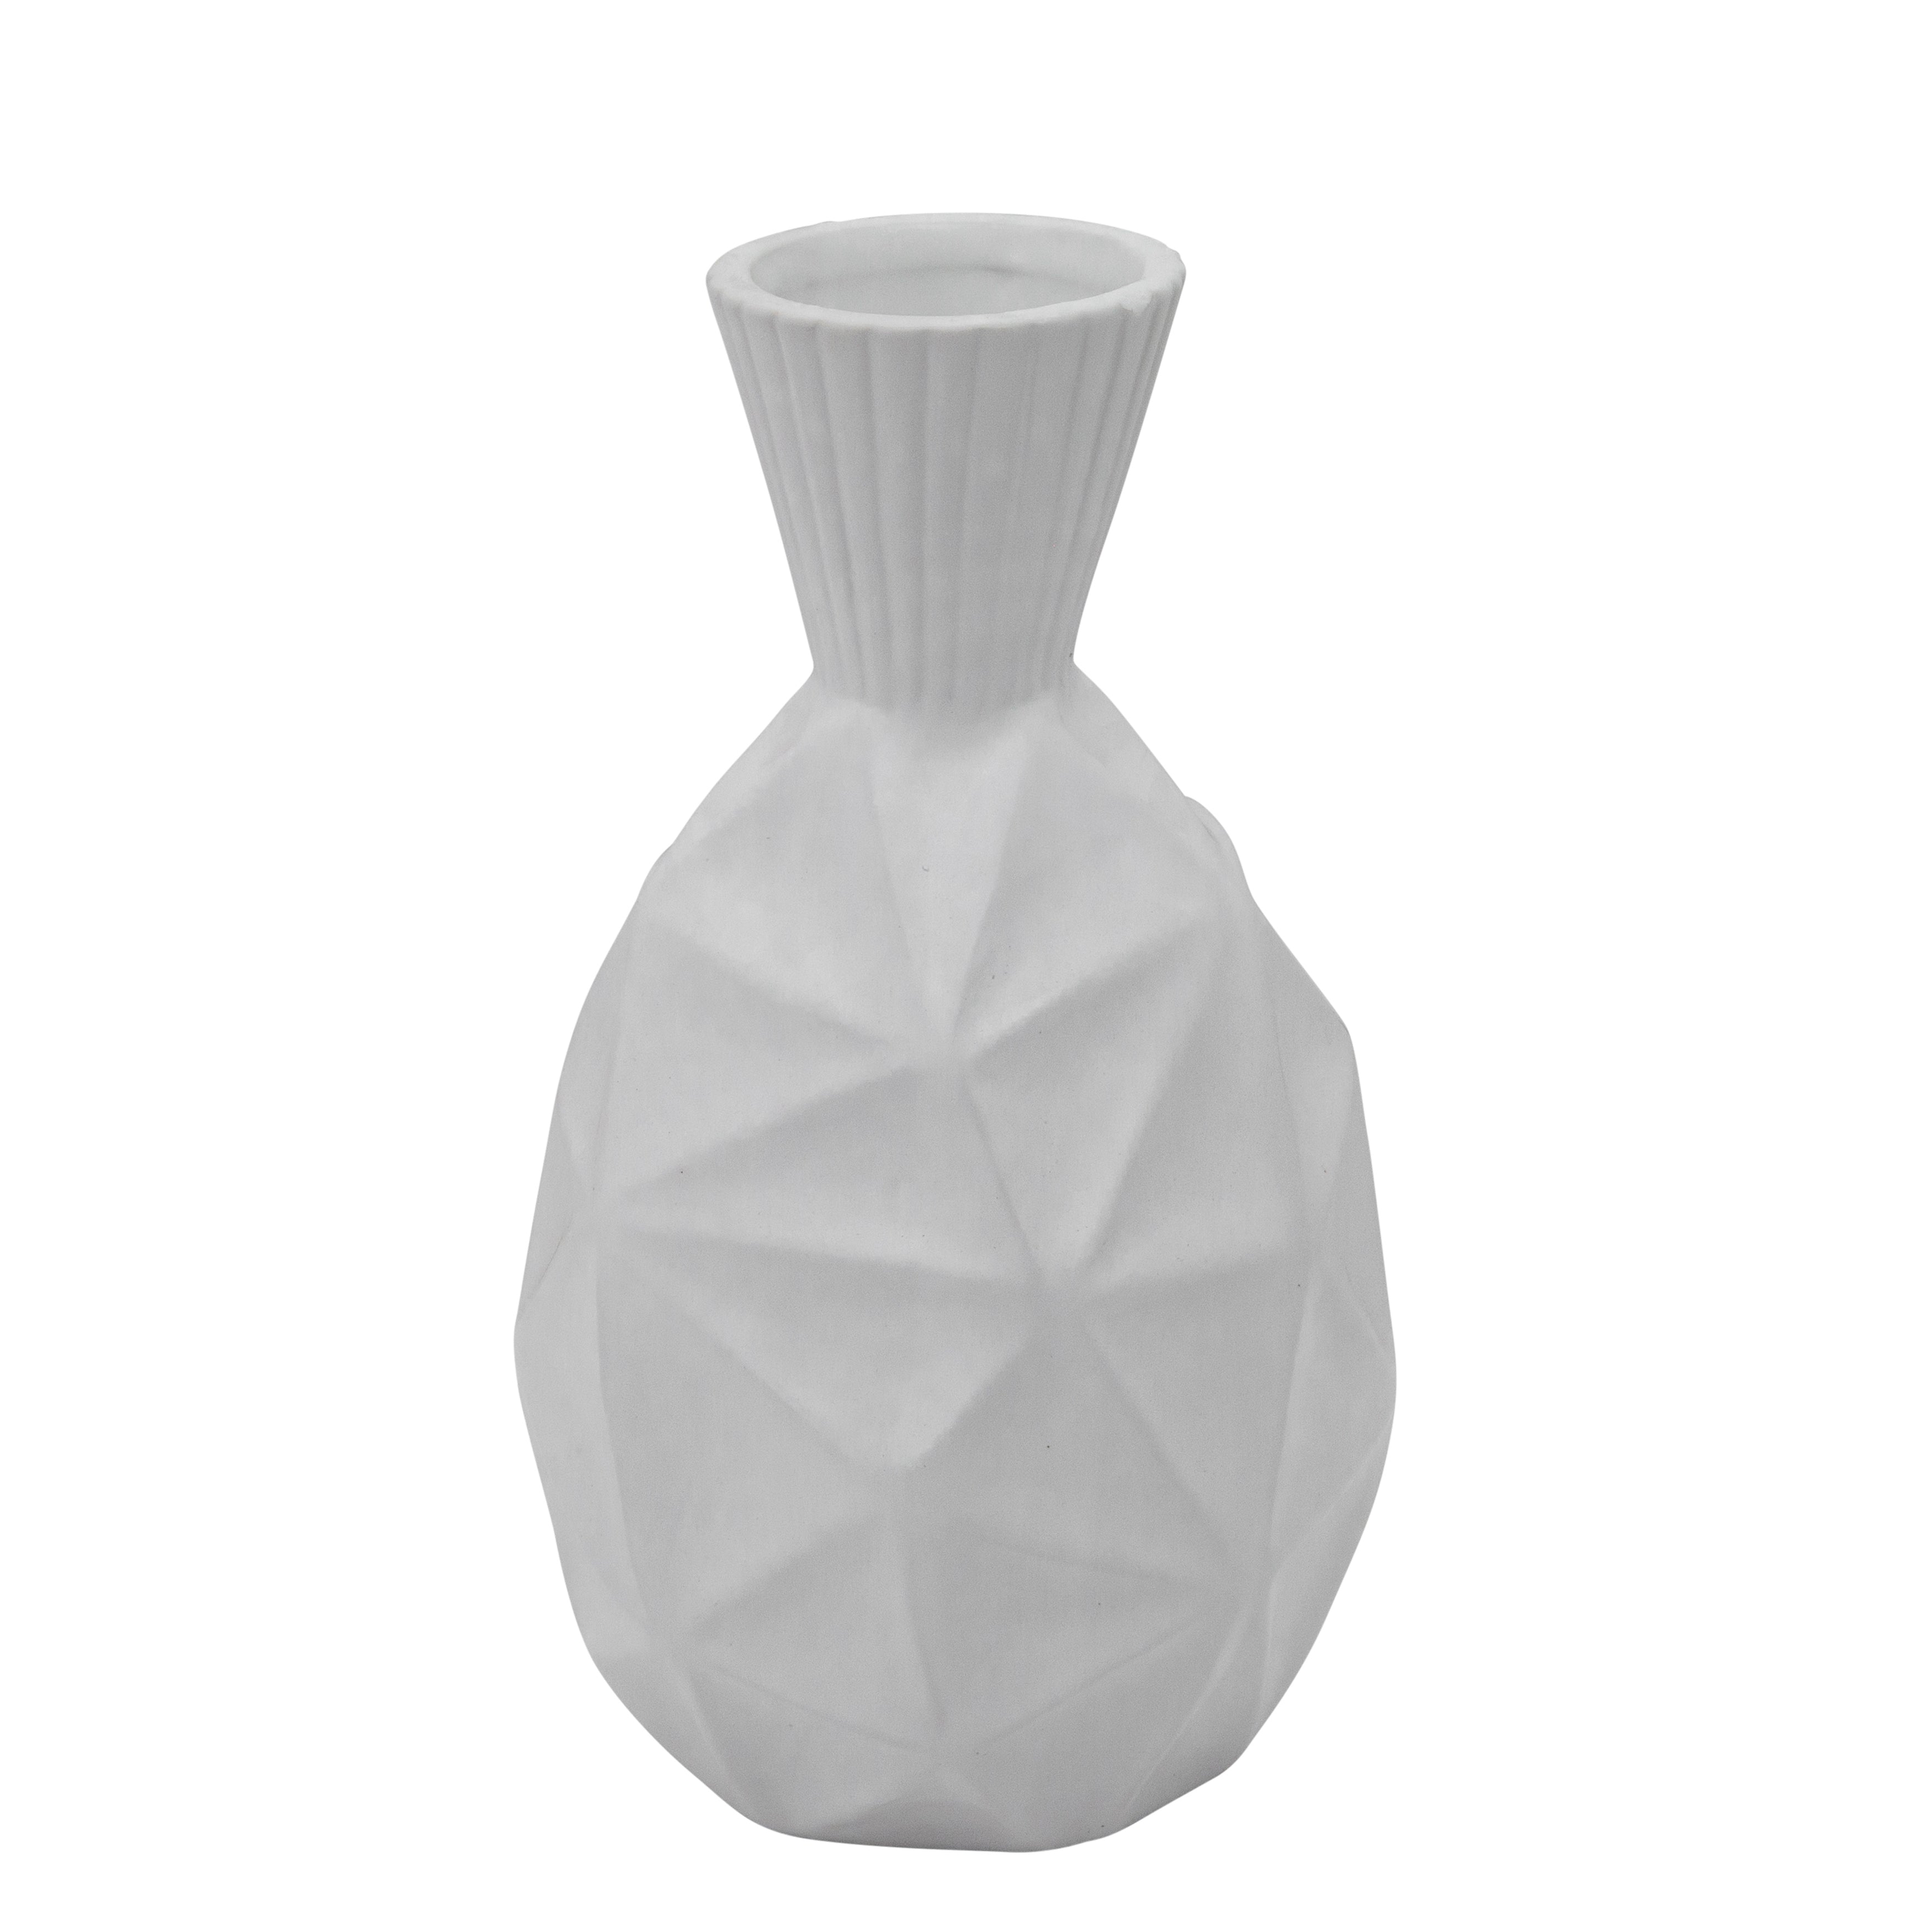 13"H Textured Olpe Vase, White